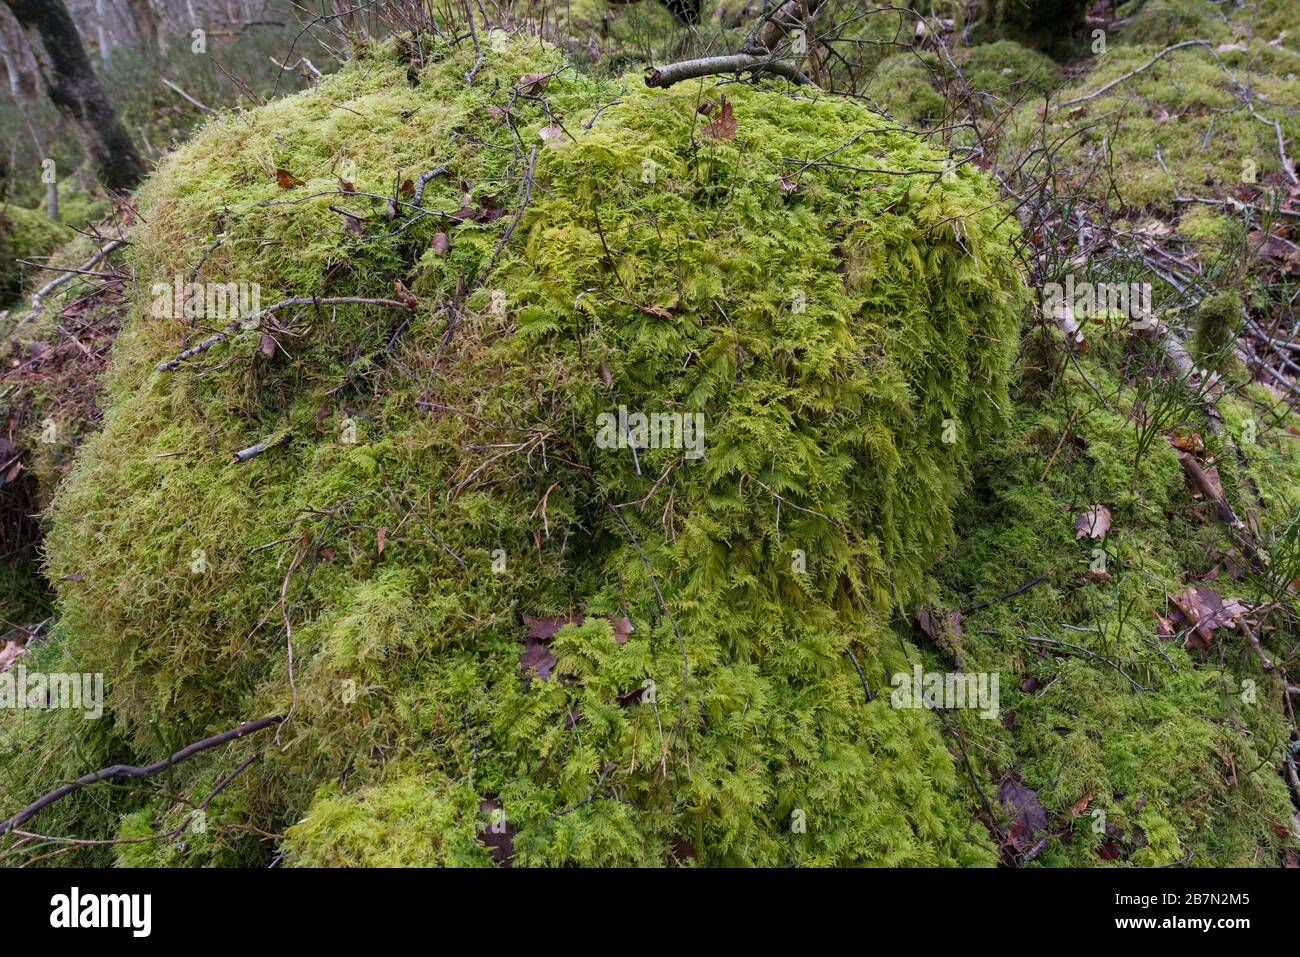 Common Tamarisk-moss (Thuidium tamariscinum) covering a rotten tree stump,  Peak District National Park, England Stock Photo